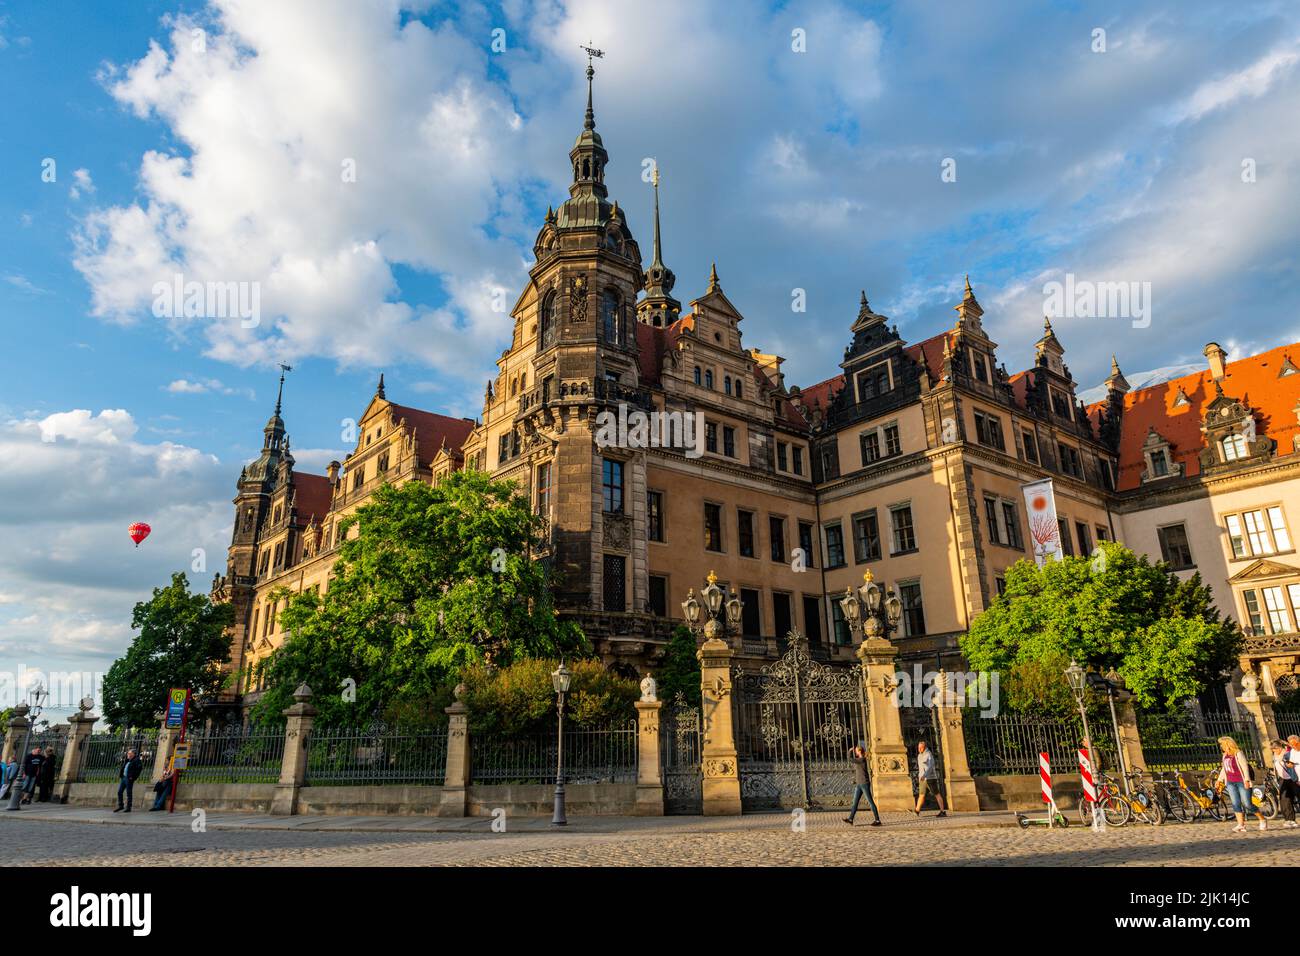 Le château de Dresde, Dresde, Saxe, Allemagne, Europe Banque D'Images